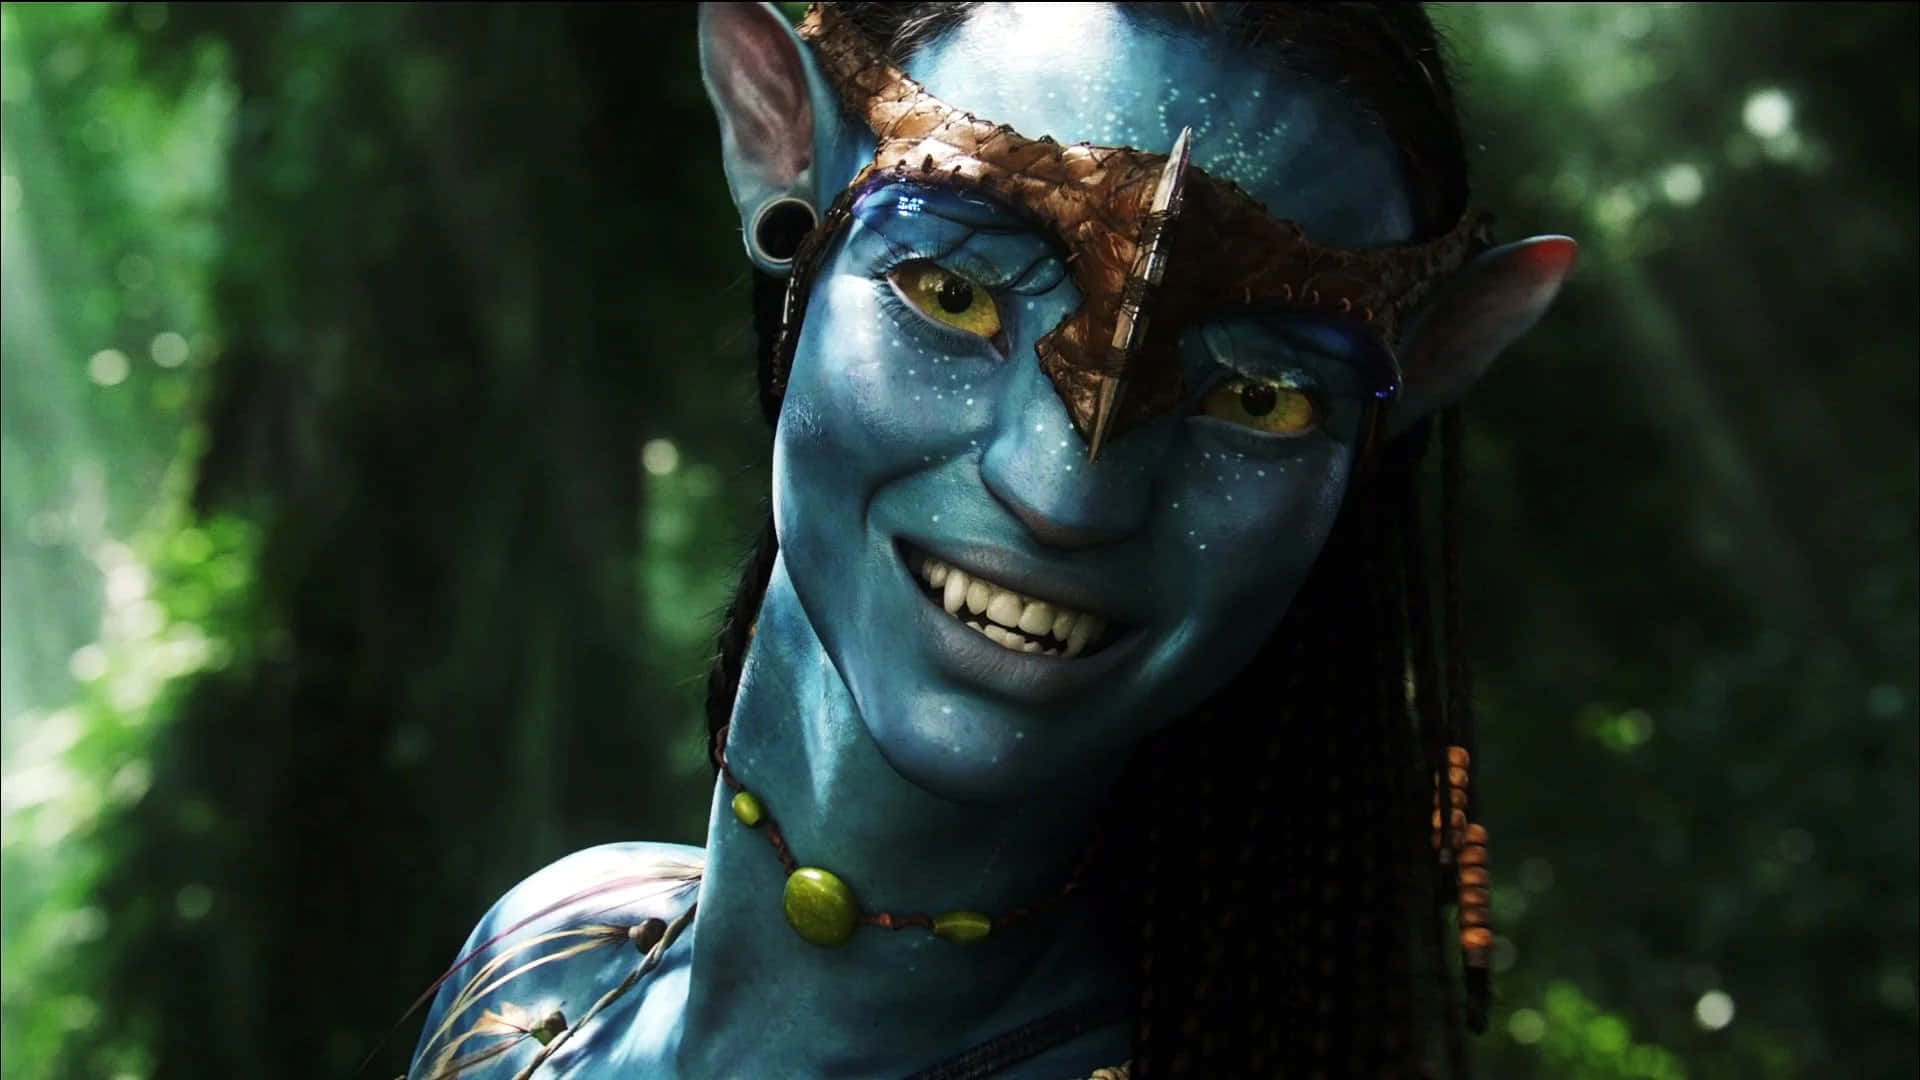 Oépico De Sucesso De Bilheteria De James Cameron, Avatar, Transporta Os Espectadores Para O Distante Mundo Alienígena De Pandora.